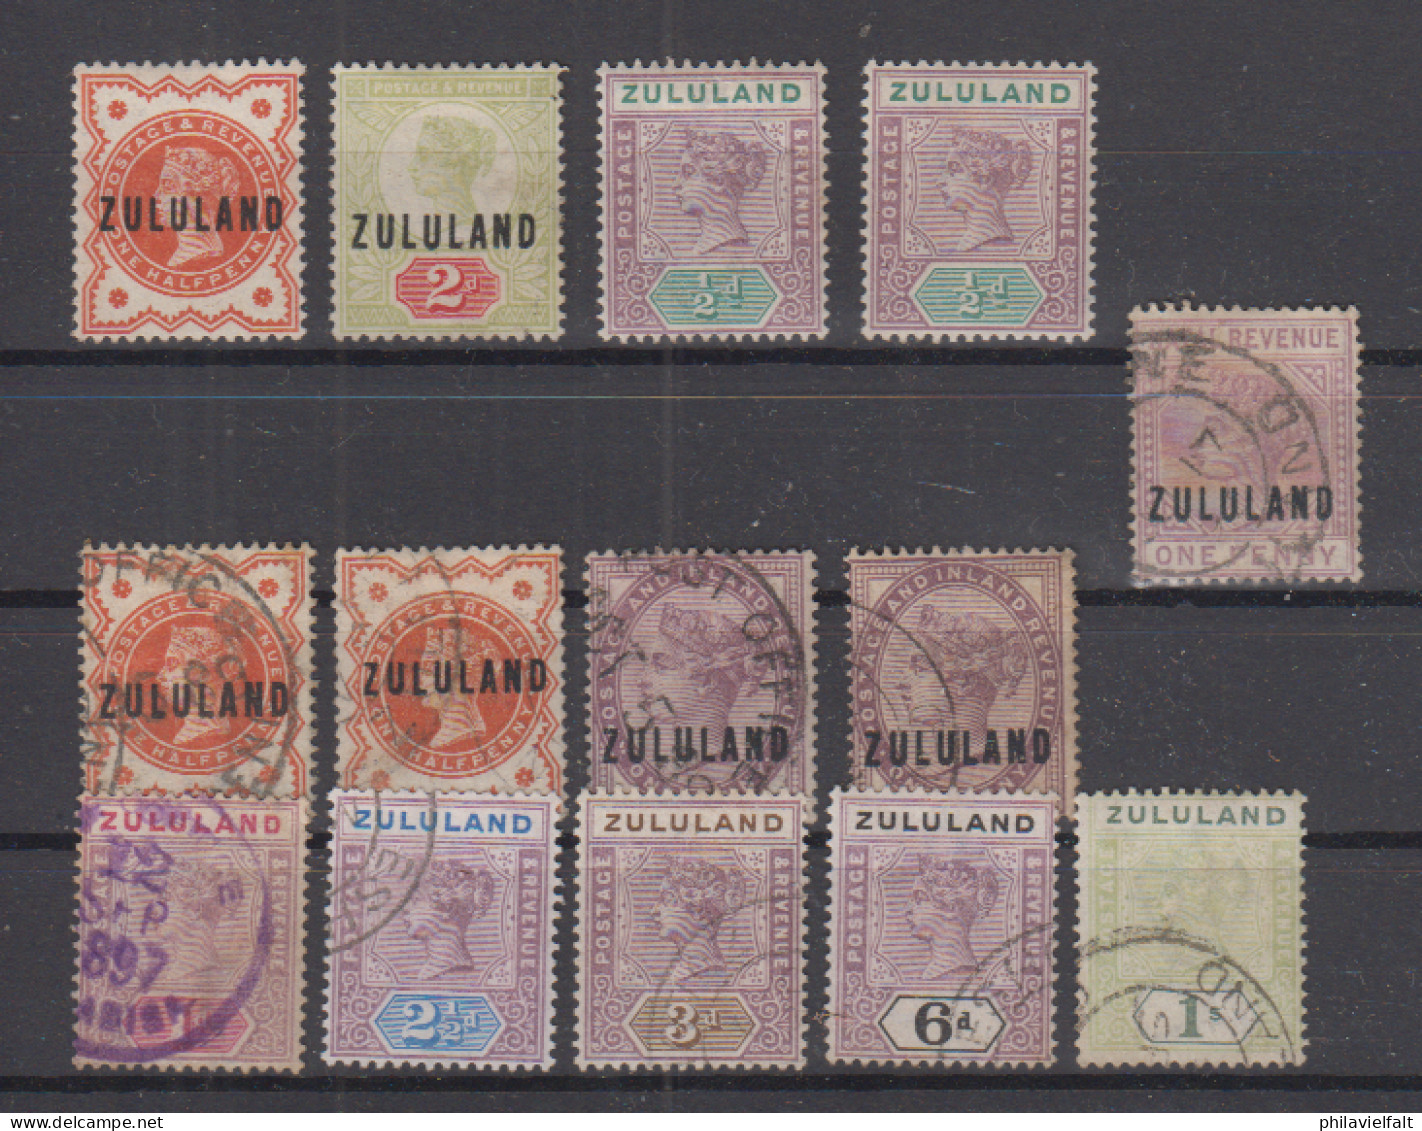 Zululand Partie Auf Steckkarte Mit 2*,4*,2x14* Und 2x2 O,2x3 O,15 Bis 19 O ( Diese 150.-) + 1x Revenue-Wert One Penny O - Zululand (1888-1902)